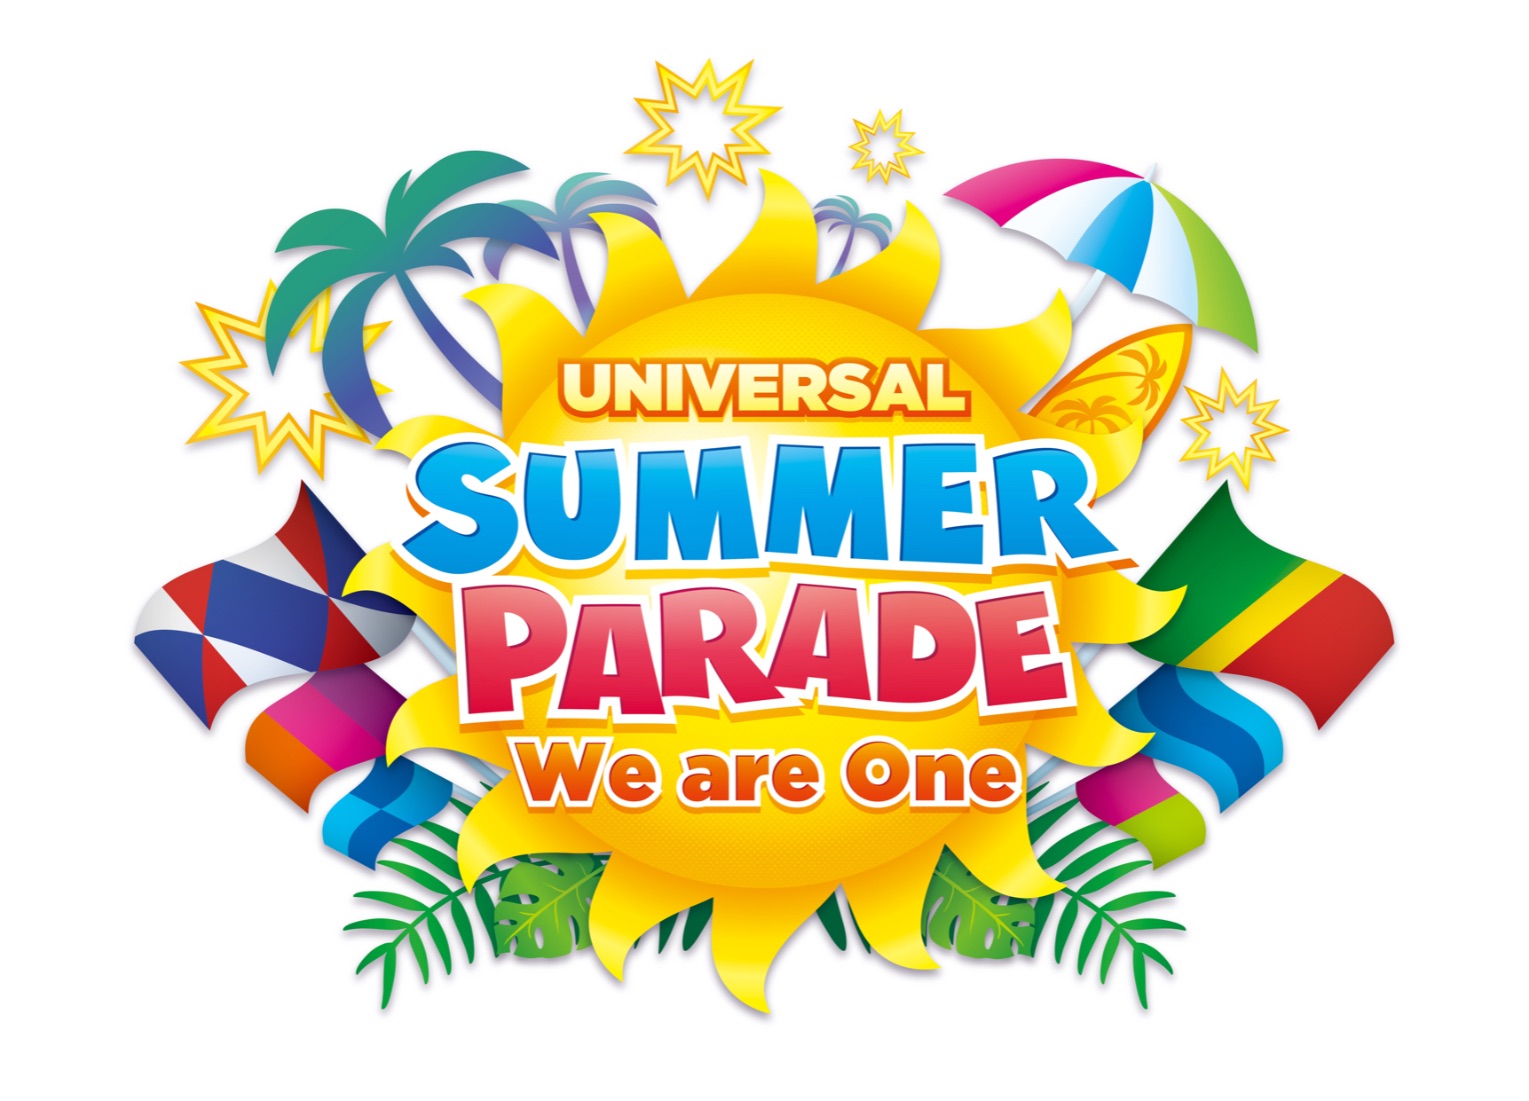 USJ Summer Parade USJ夏限定のパレード夏季有限遊行